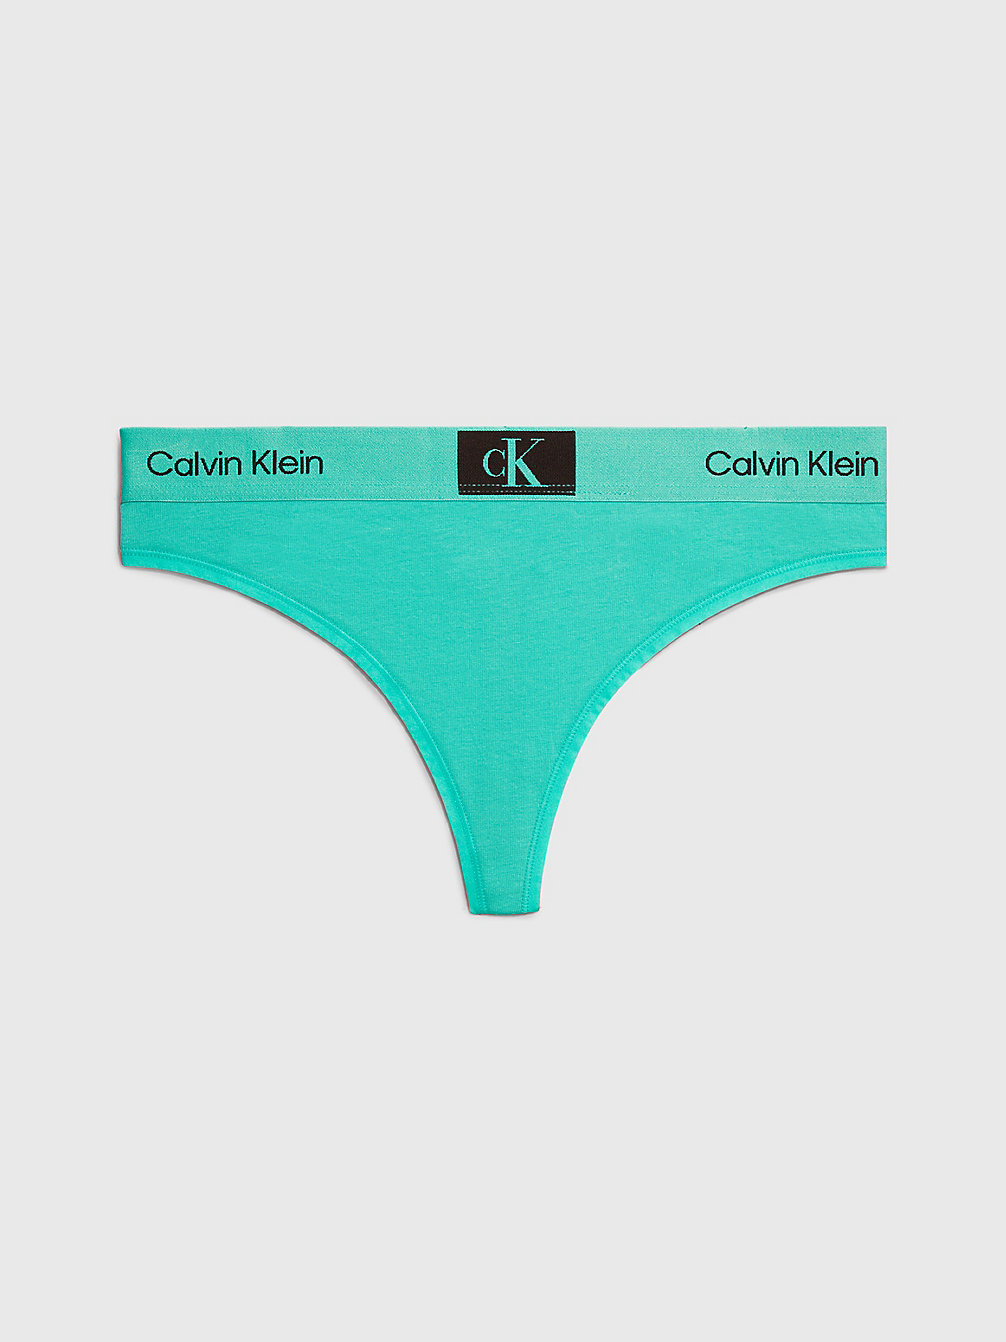 FRESH PEPPERMINT Thong - Ck96 undefined women Calvin Klein